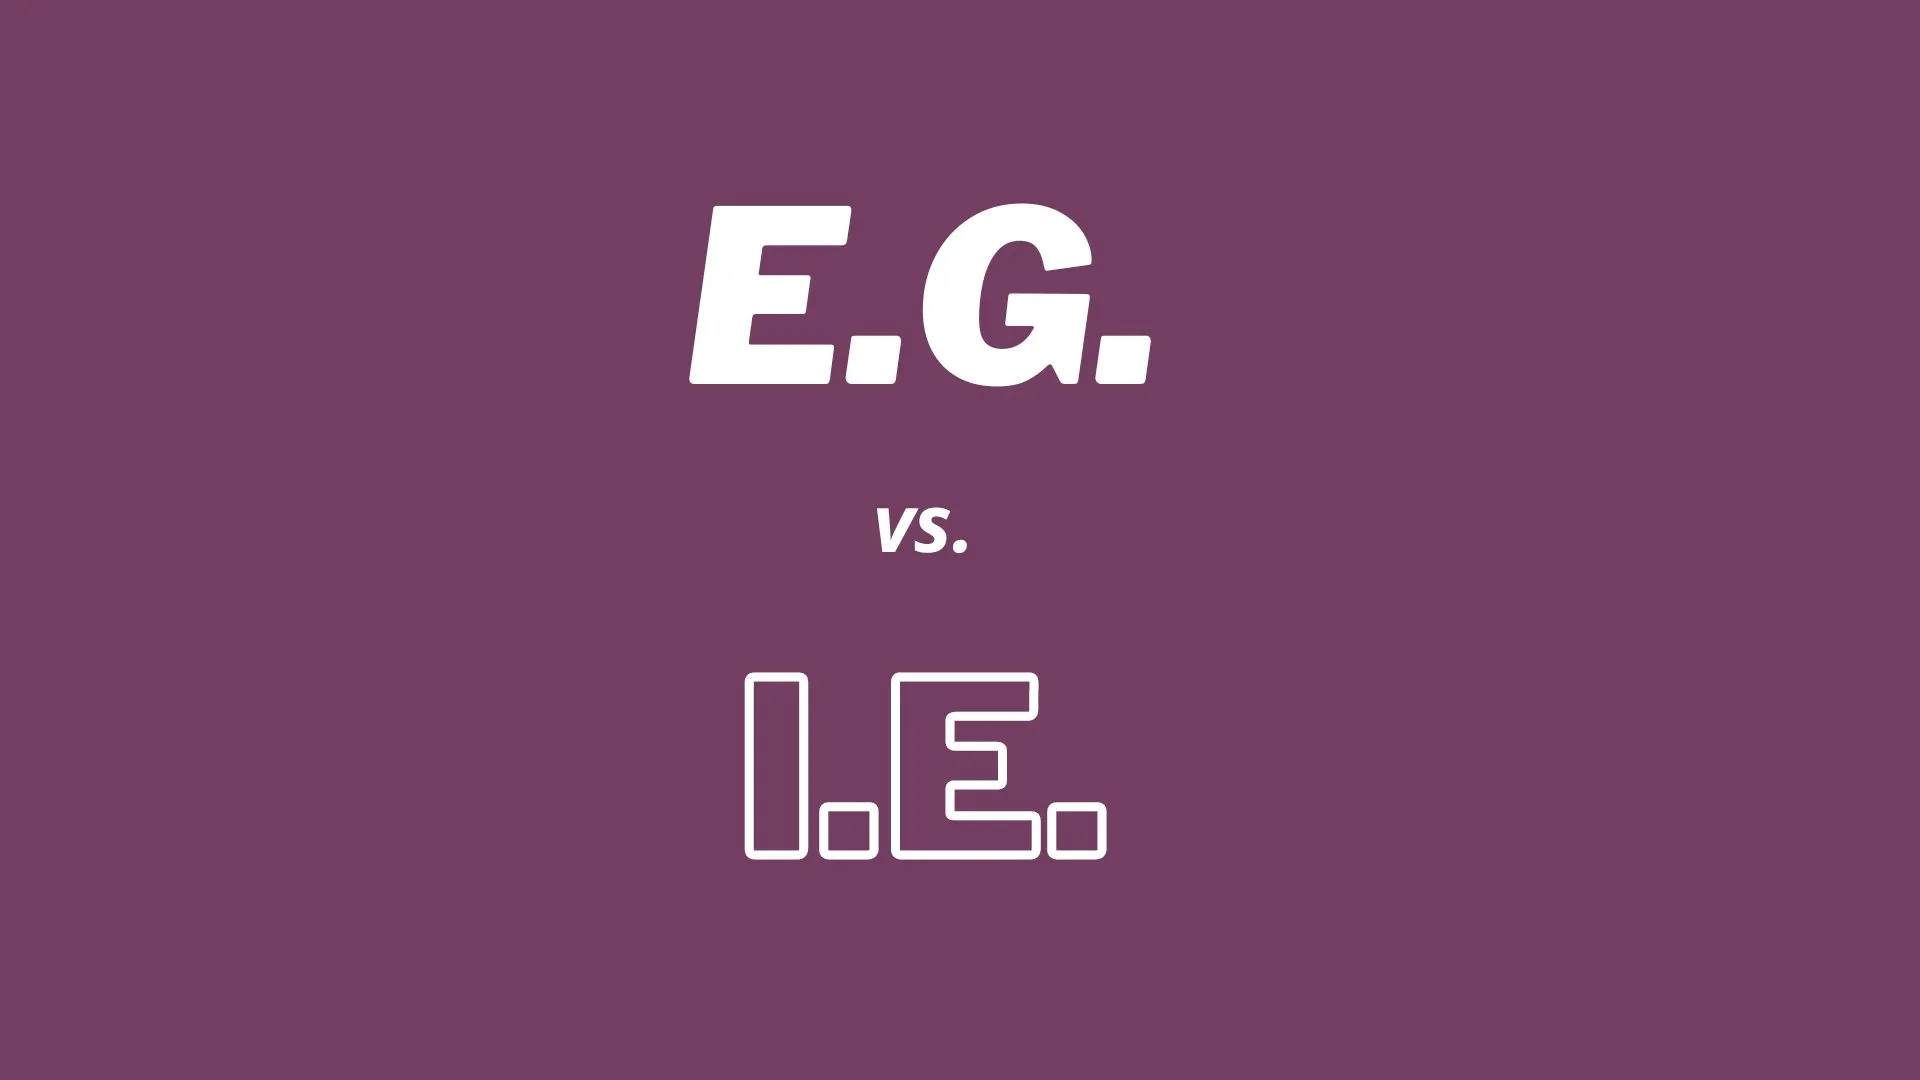 ラテン語の略語「i.e.」と「e.g.」の違いと英語での意味を示すイラスト、英語の教師と学習者向け。